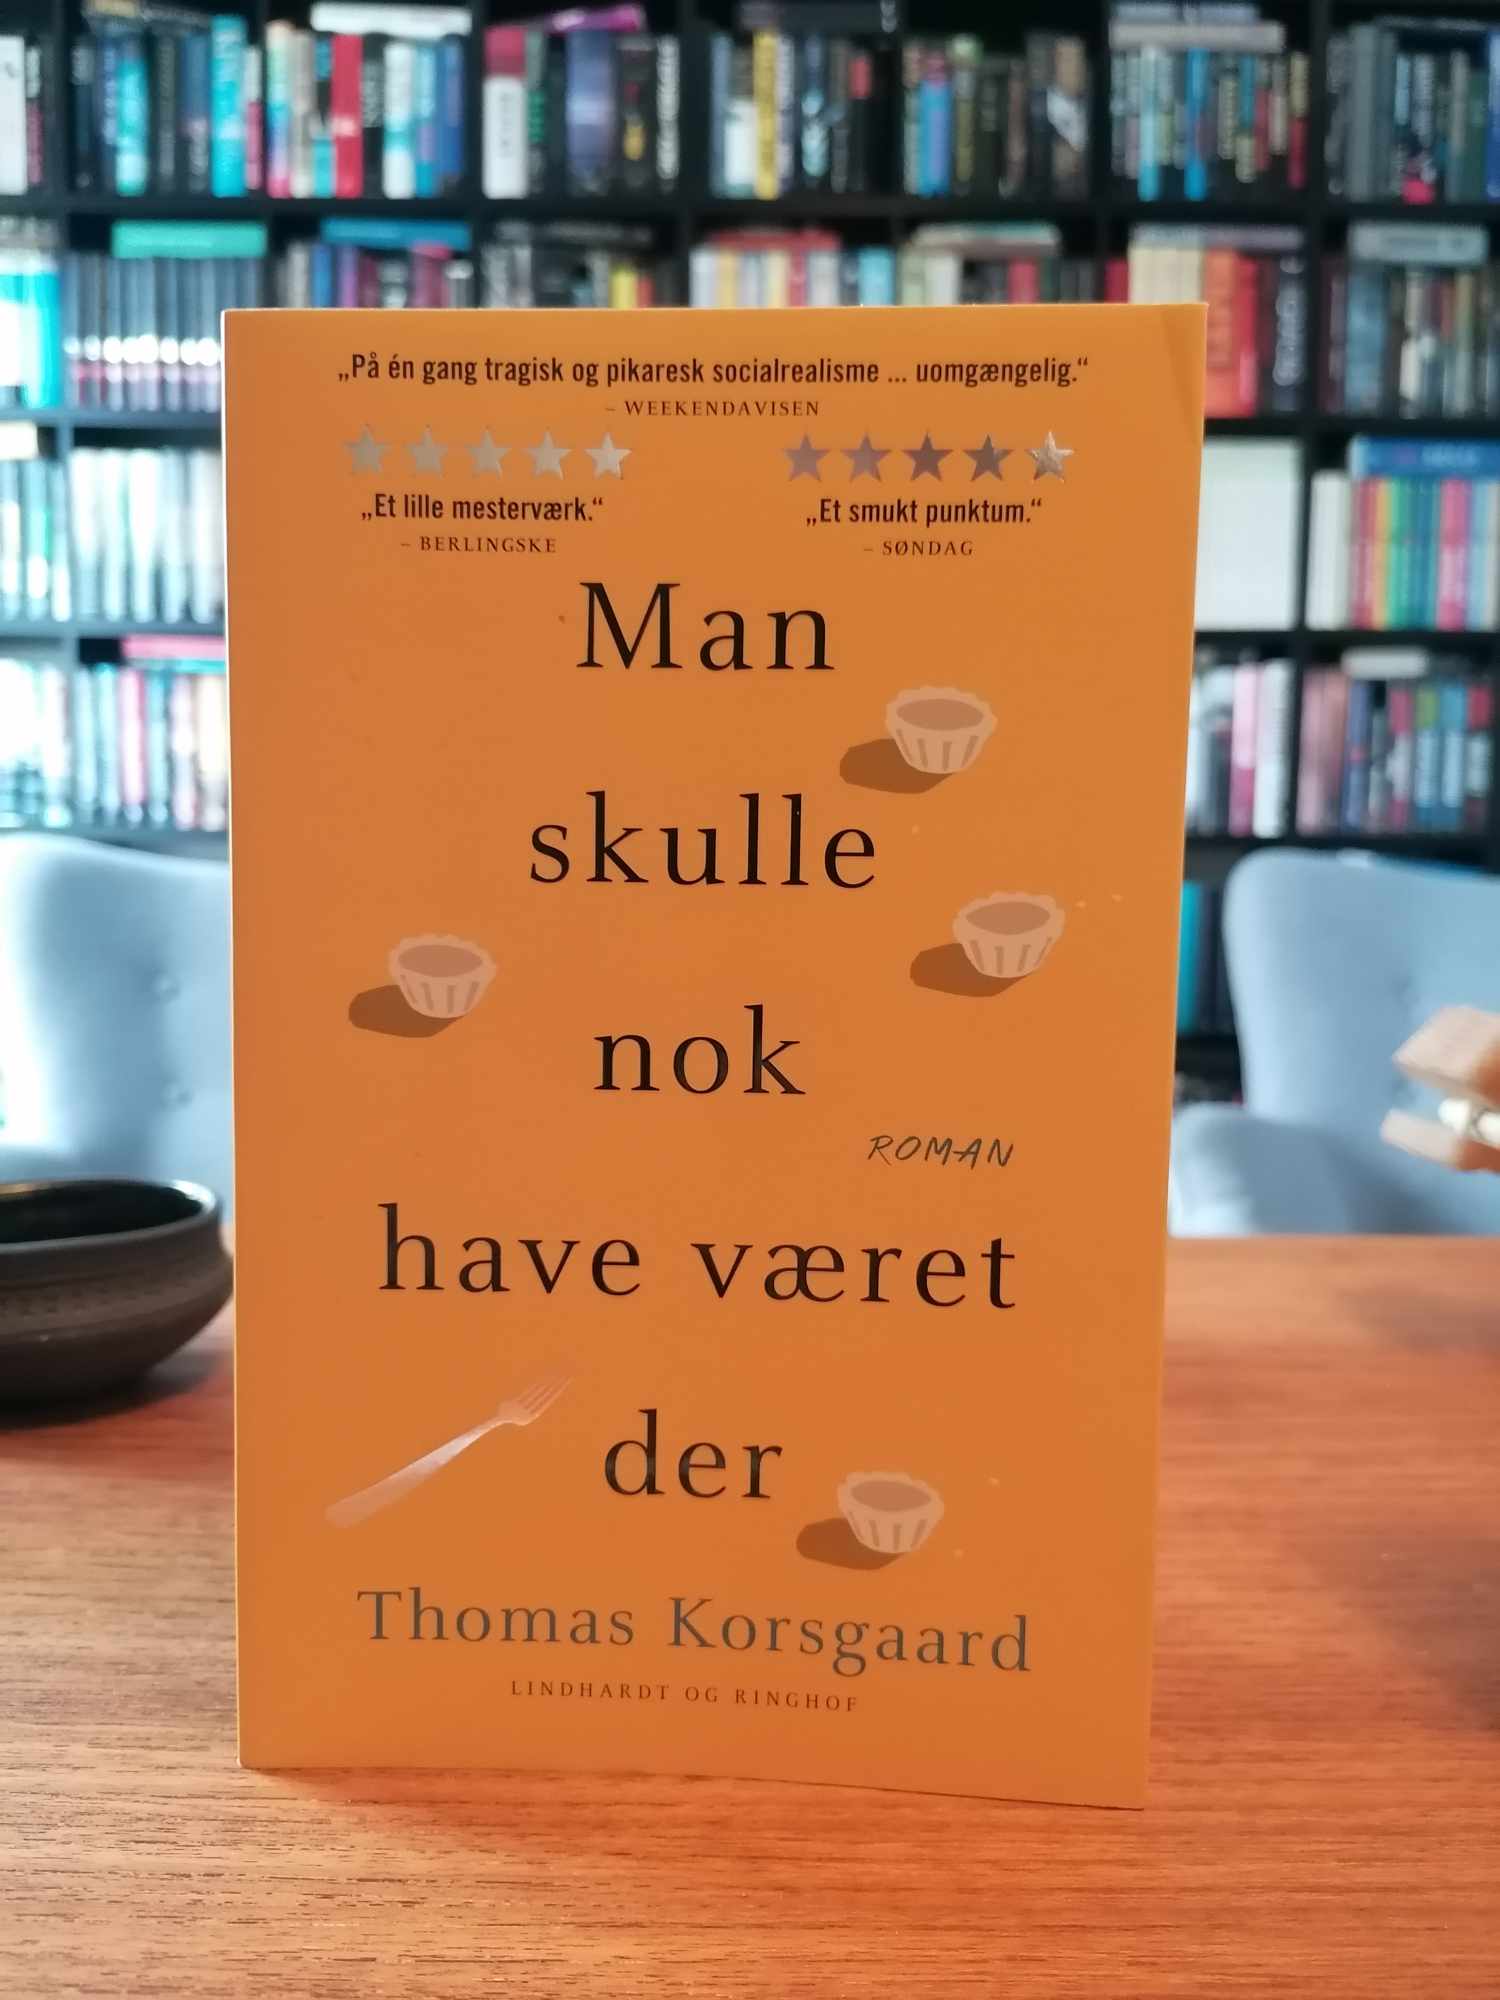 "Man skulle nok have været der" af Thomas Korsgaard